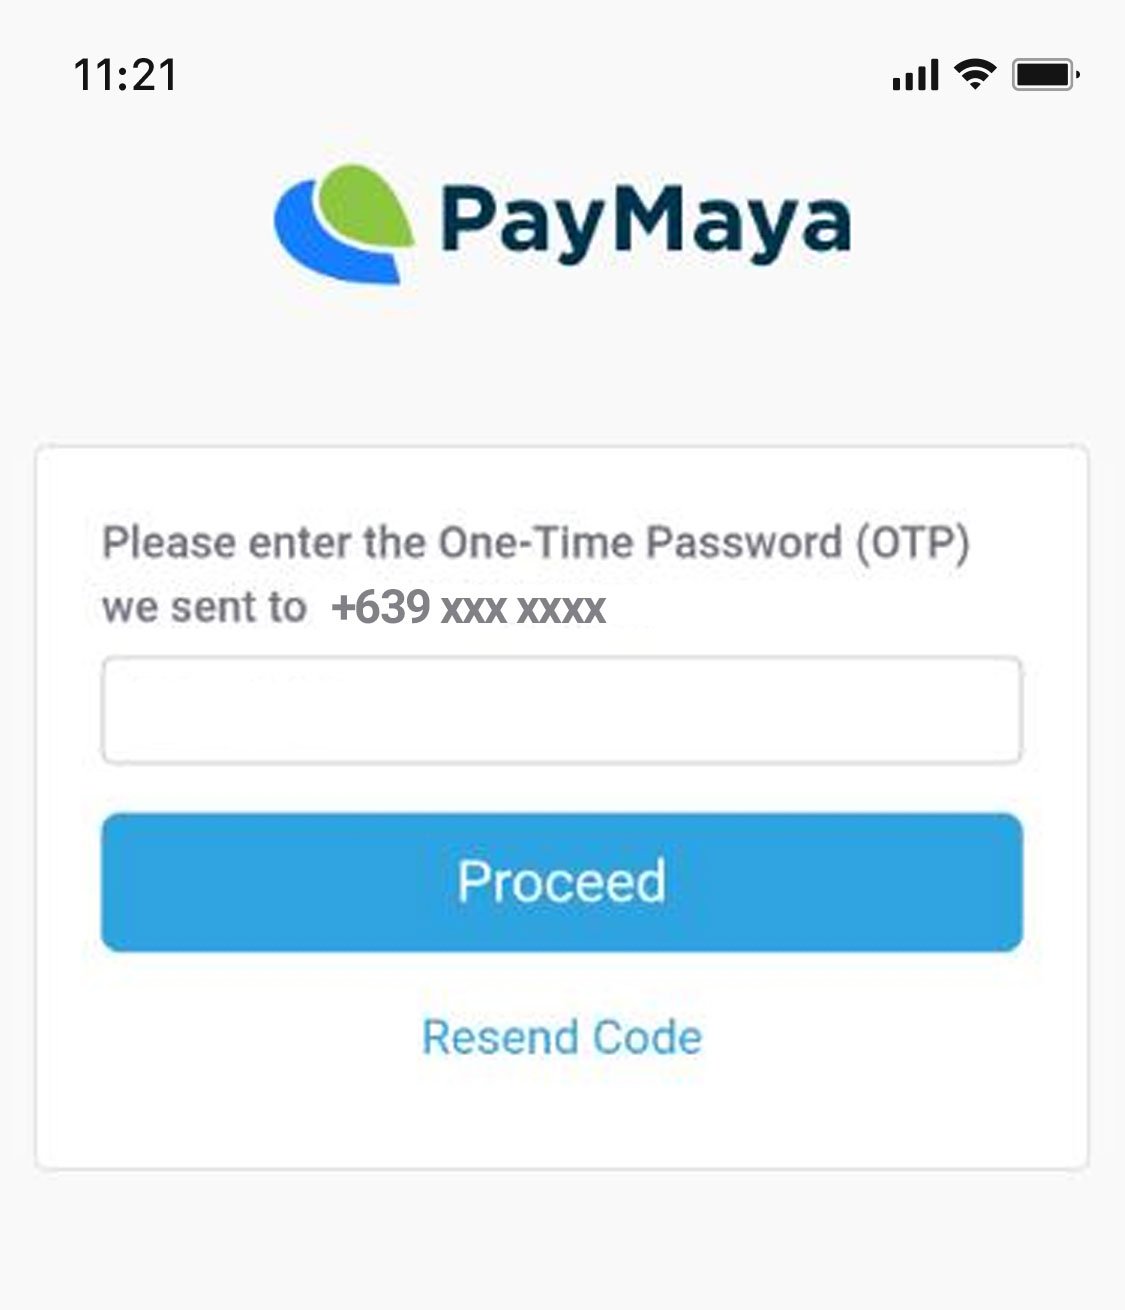 Pay via Paymaya - Step 2